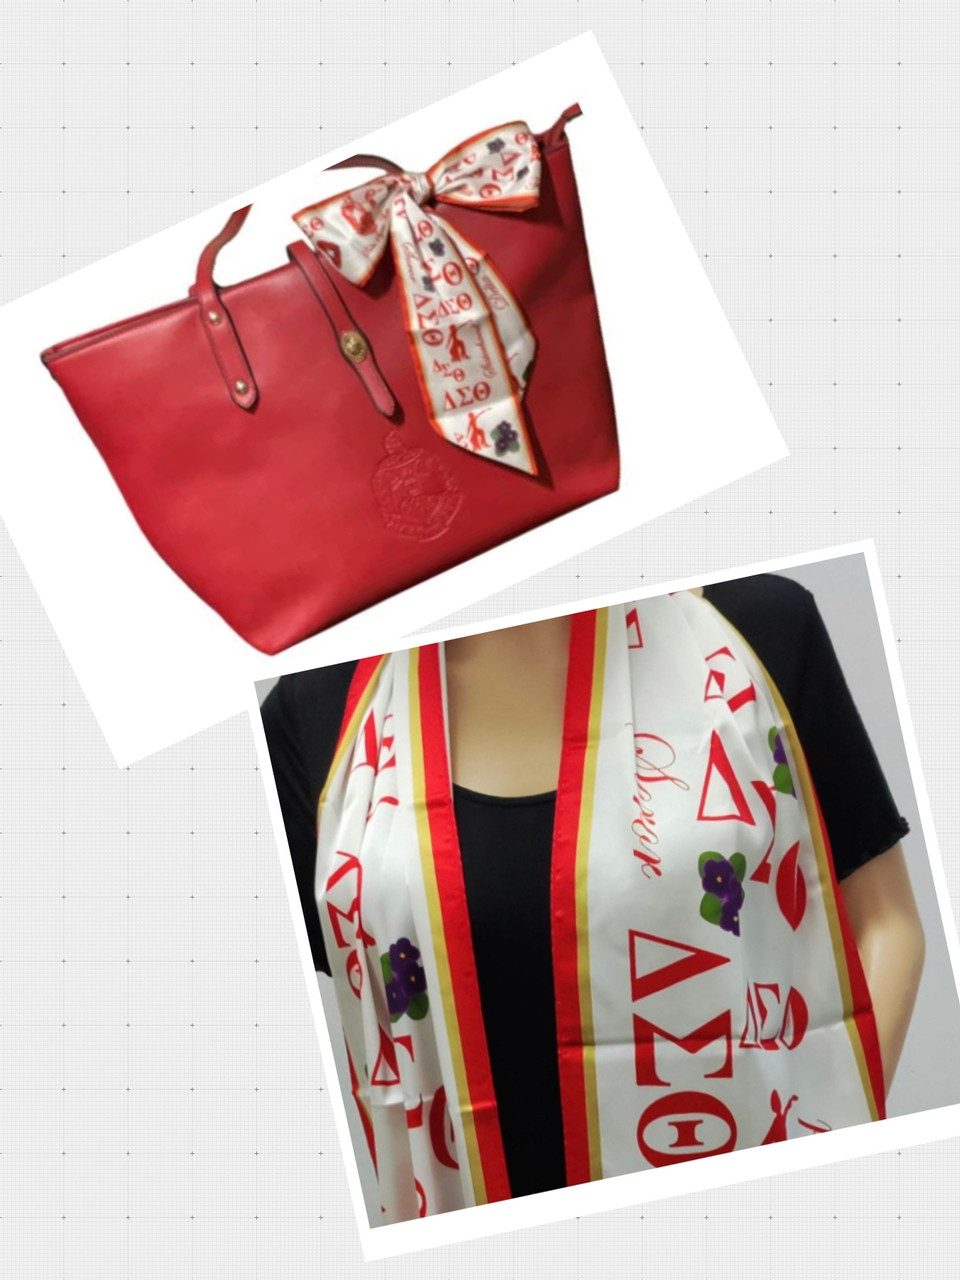 Bandolino Faux🐊 Crossbody purse, bag & Red Scarf ~ Gift Set NWT! | eBay